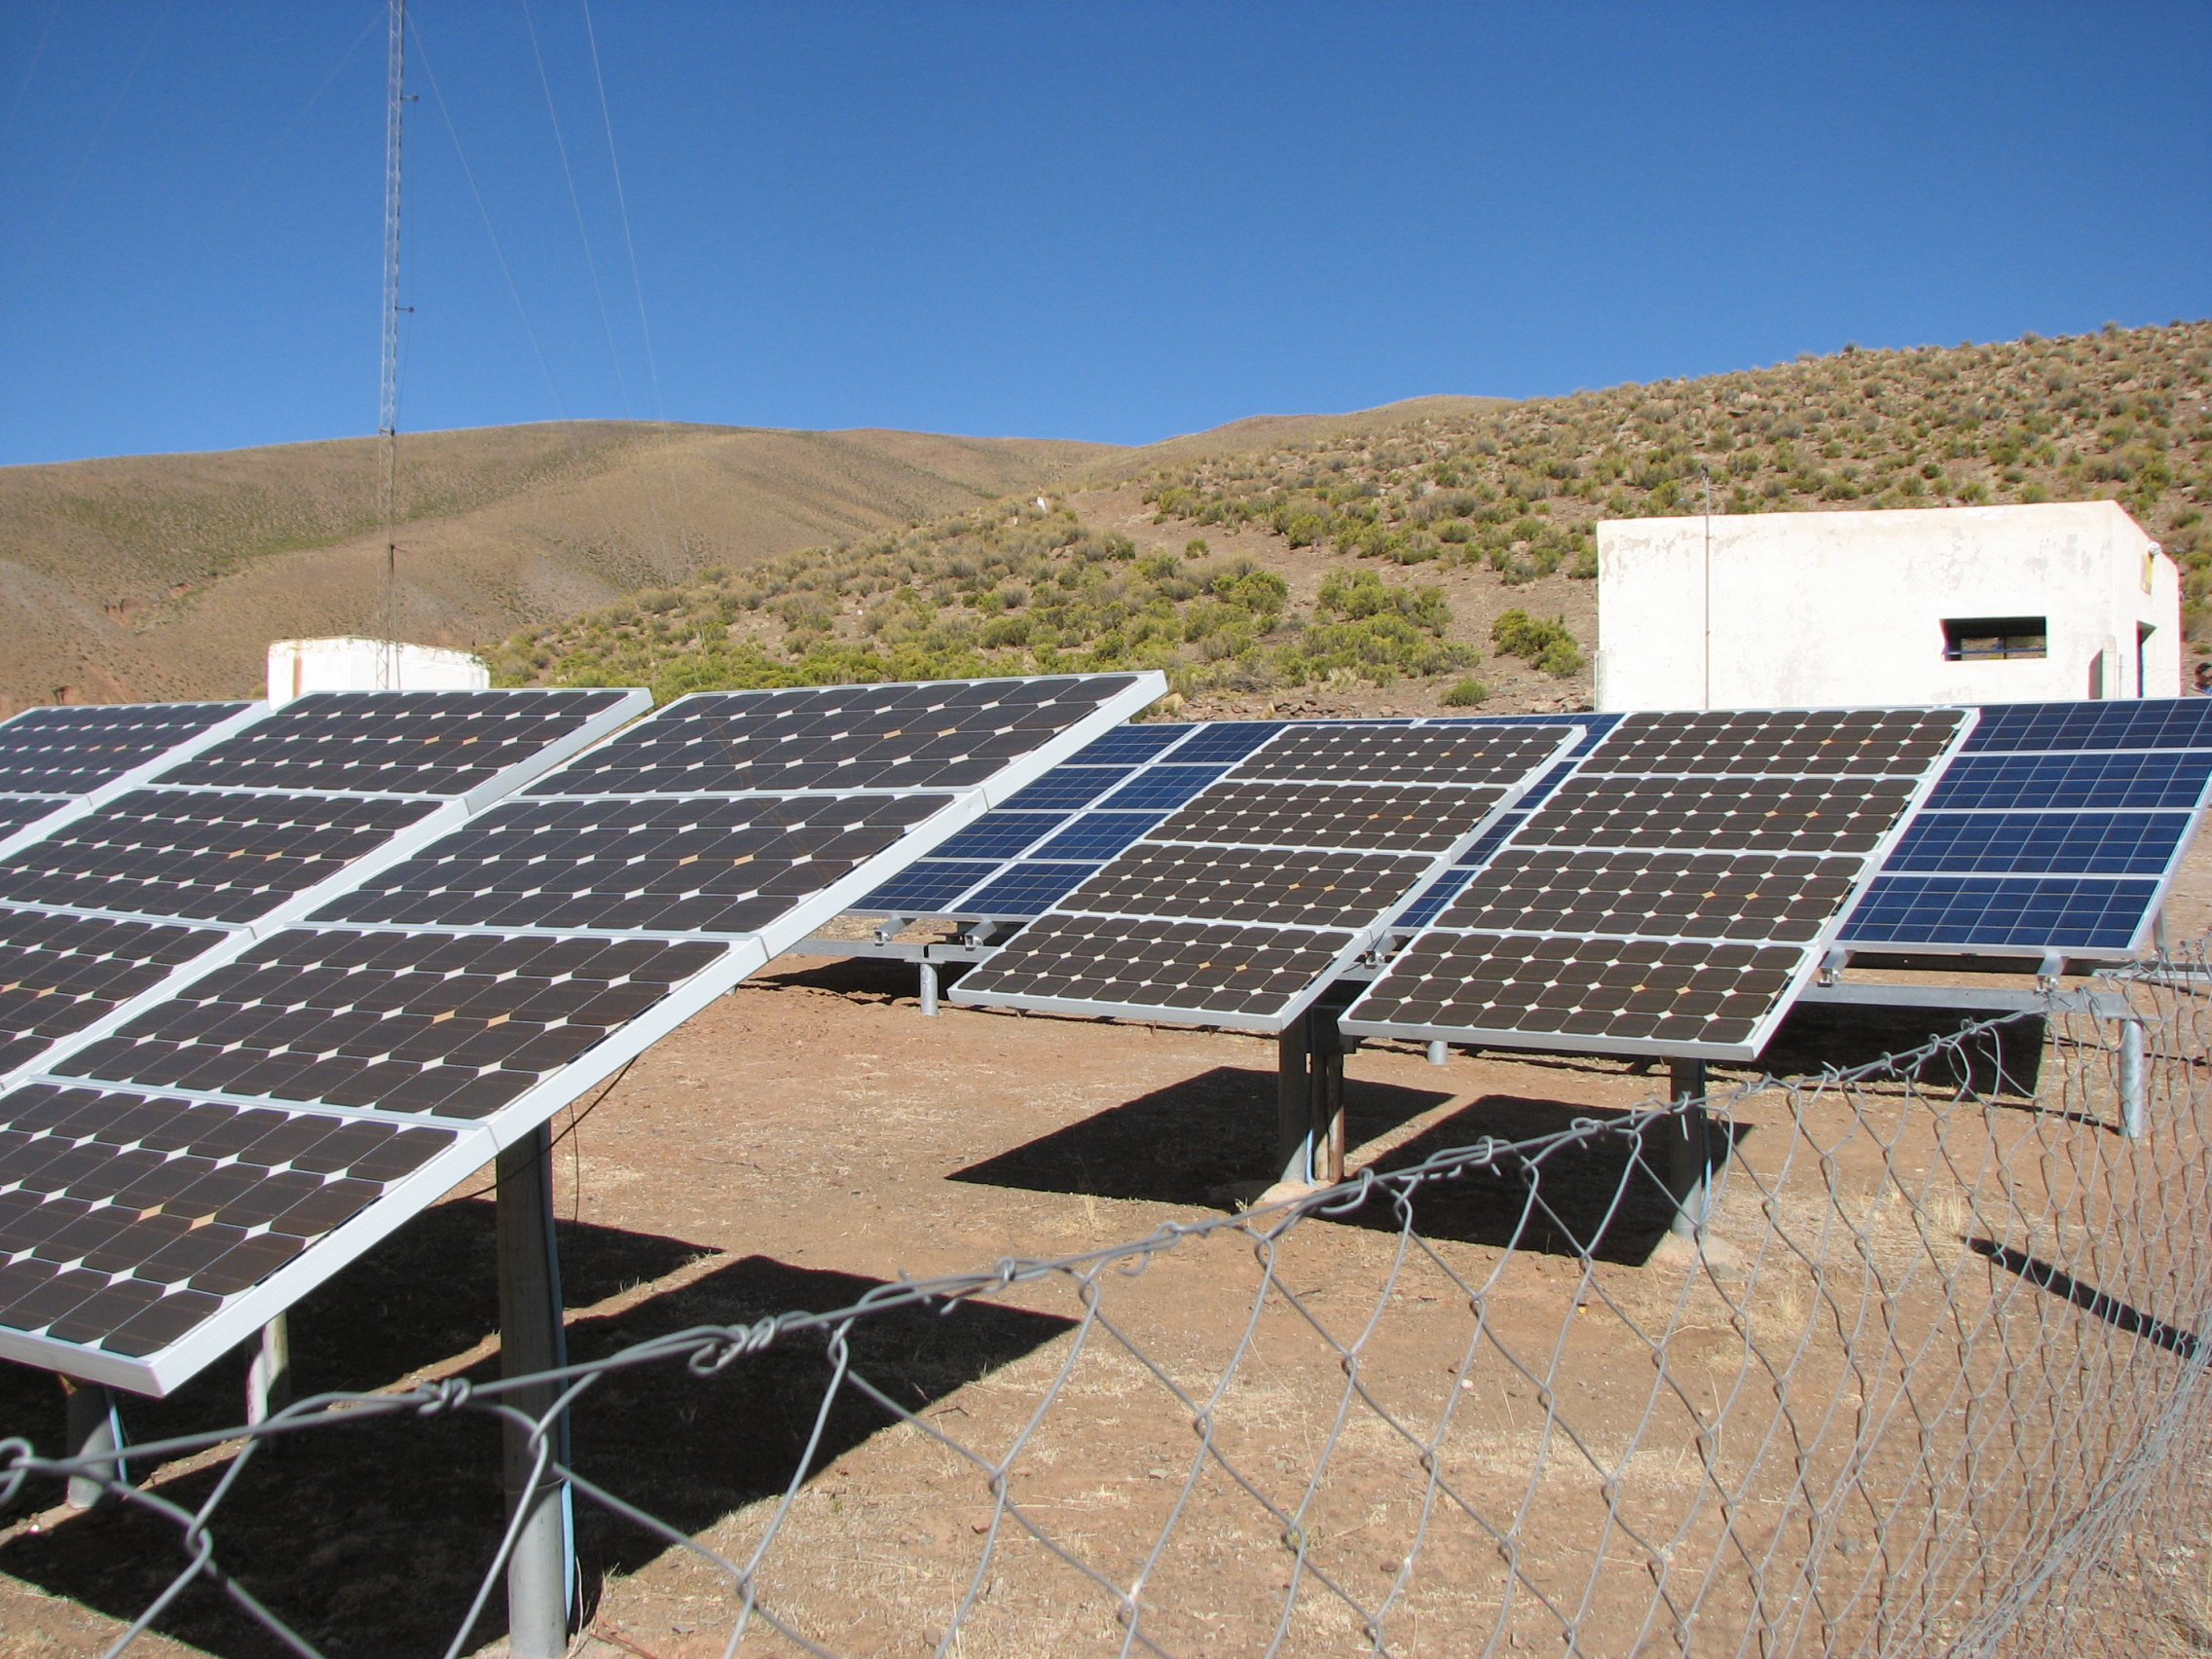 Seis empresas ofertaron para proveer e instalar equipos fotovoltaicos en centros de salud rurales en el país. Foto: Permer.